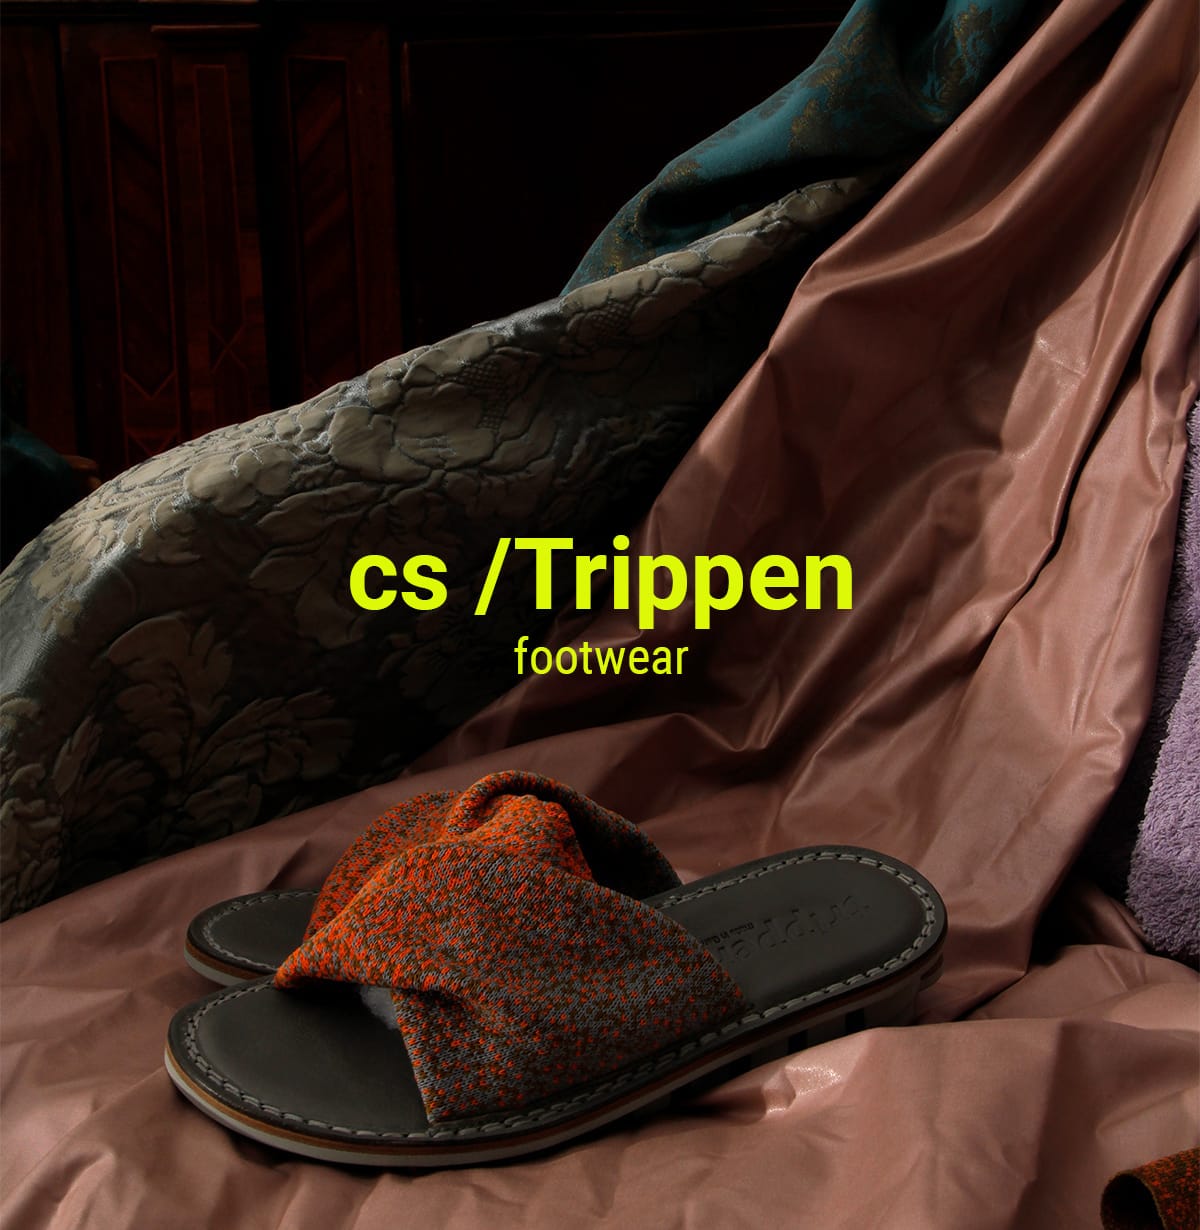 The Case Studies / Trippen Footwear